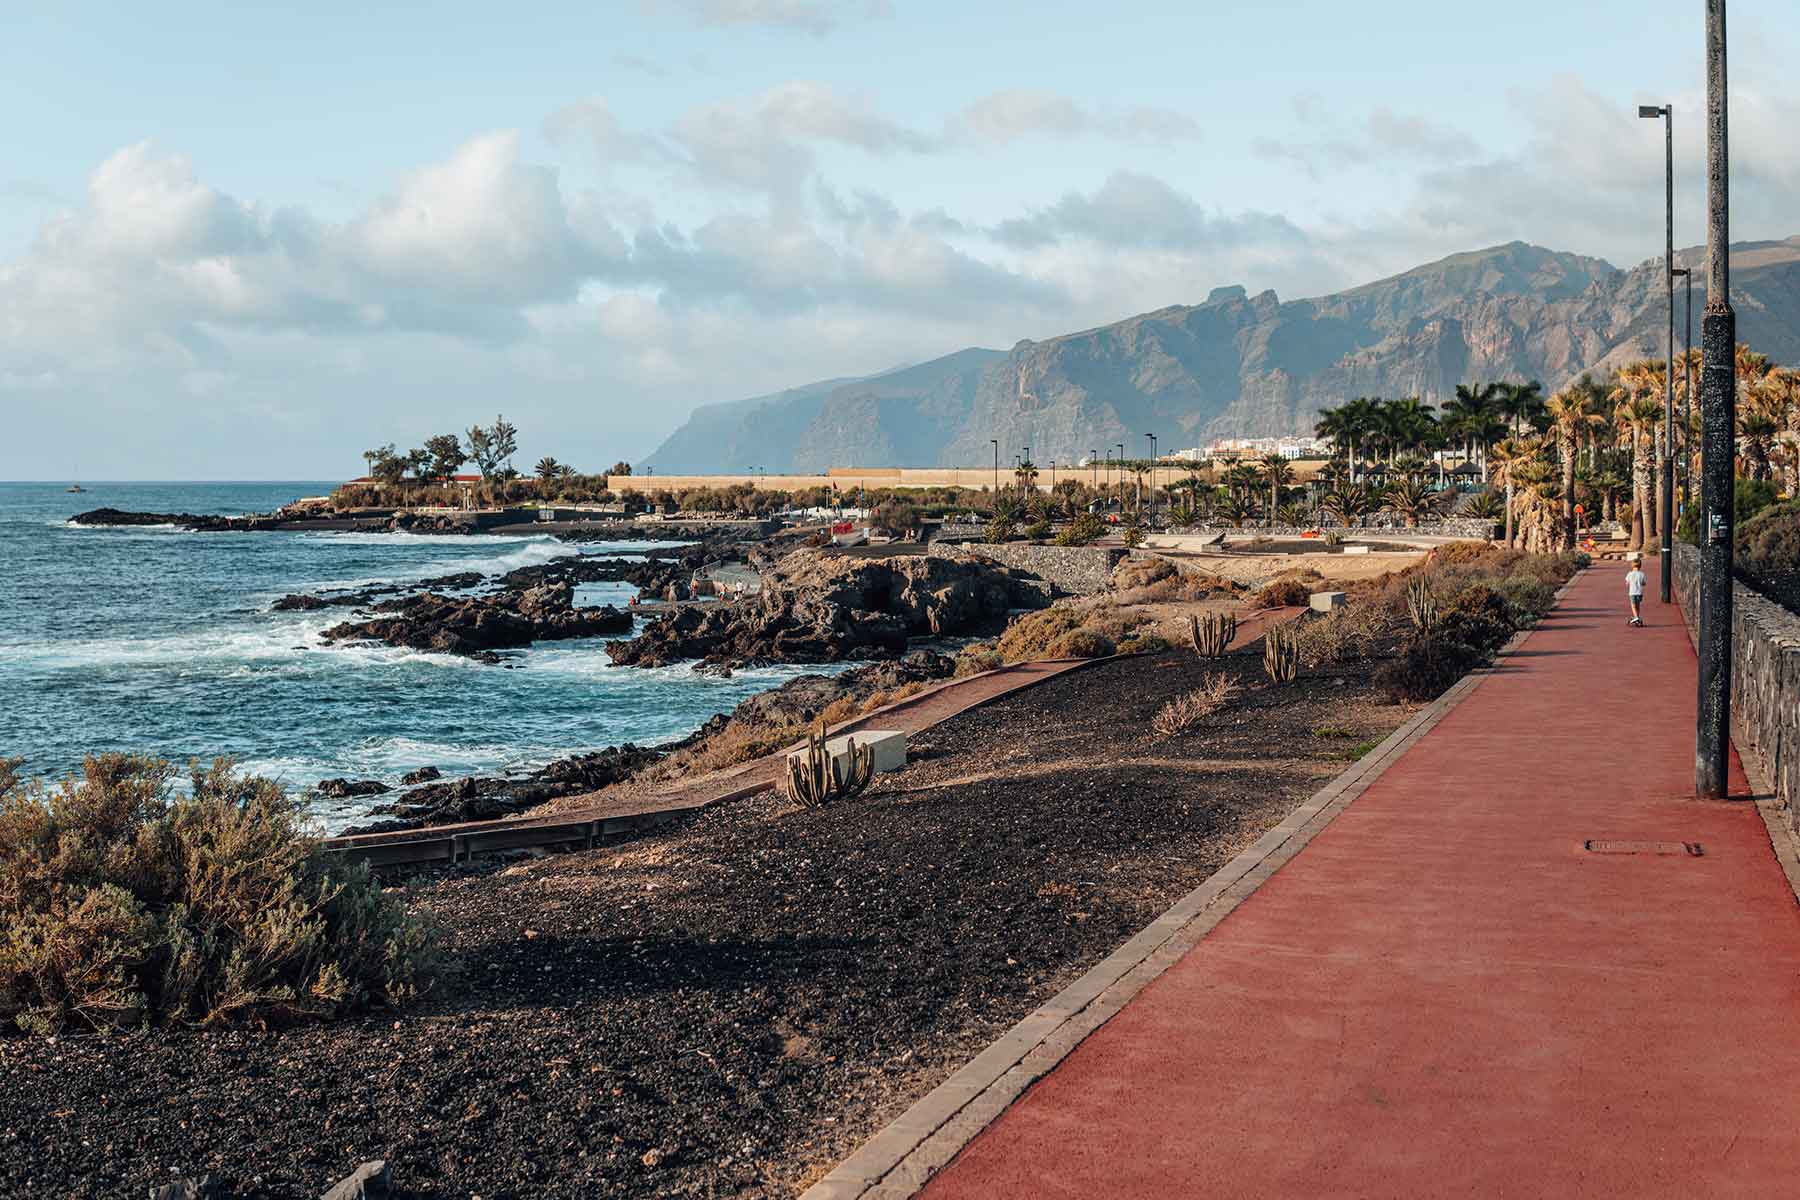 Coastal promenade in Alcala, Tenerife